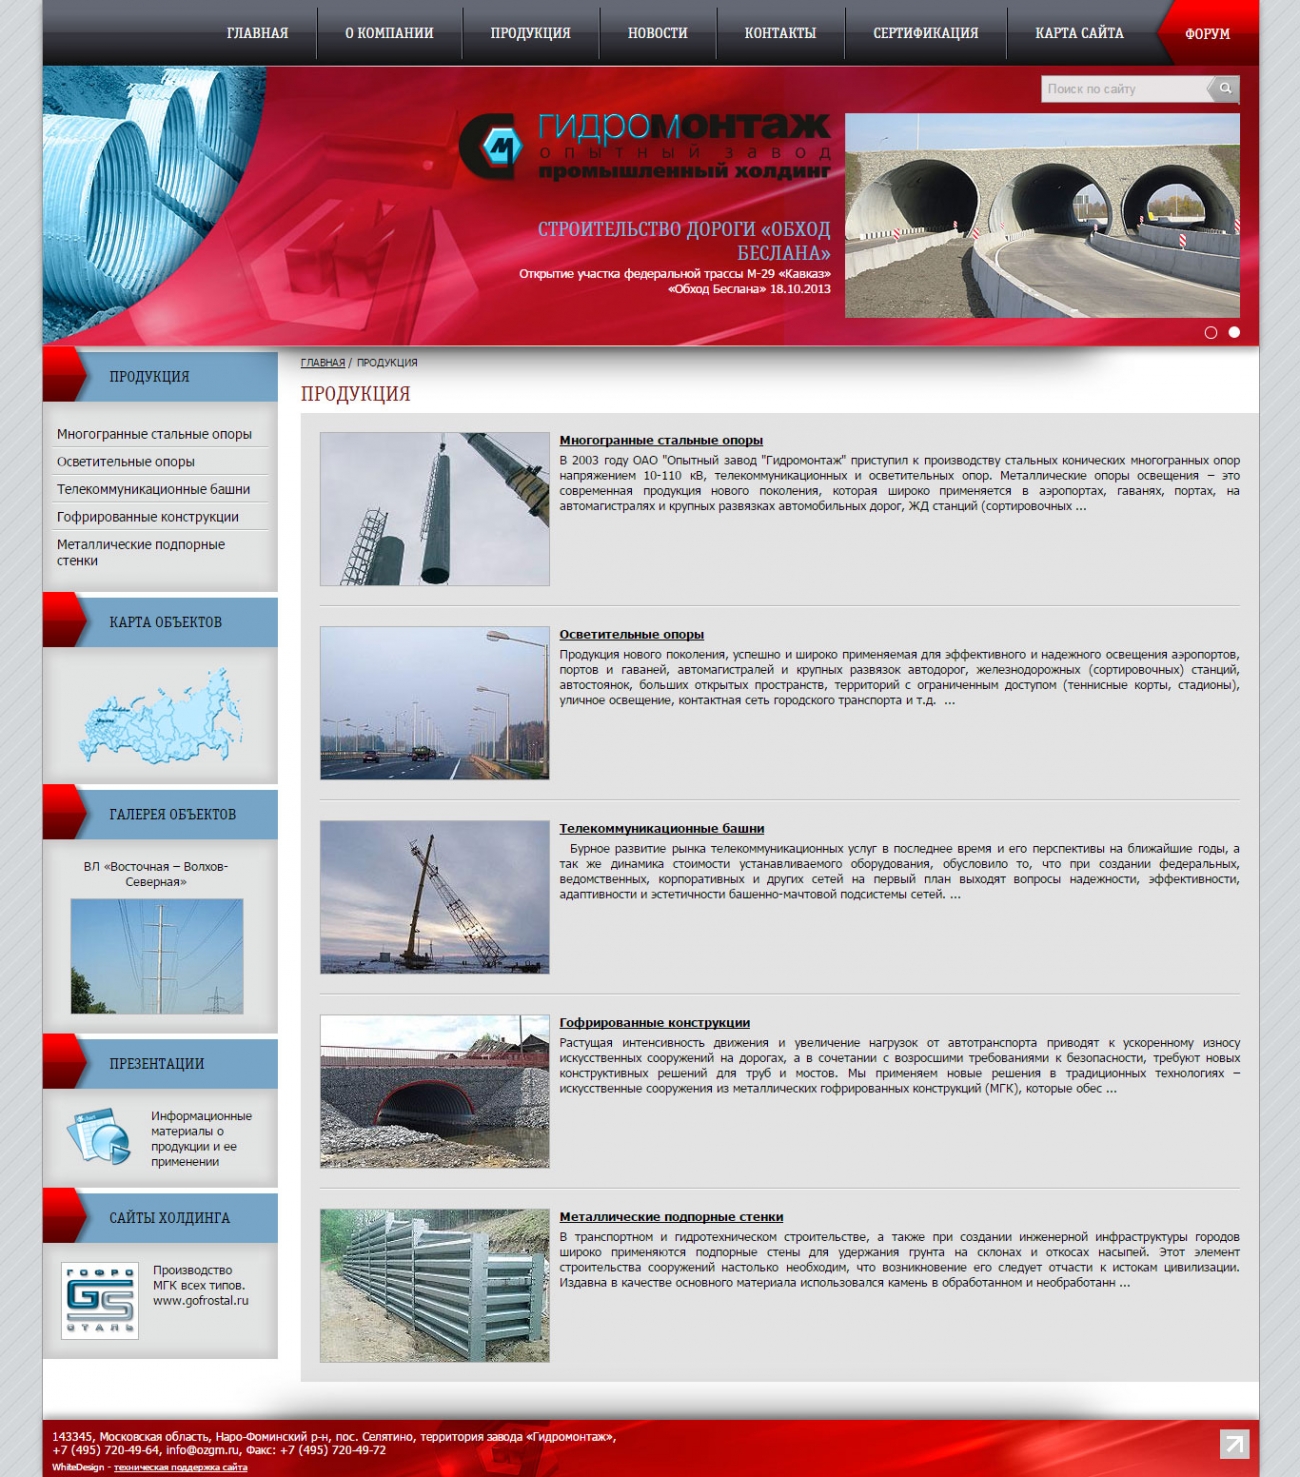 Шаблон страницы со списком продукции сайта опытного завода «Гидромонтаж»